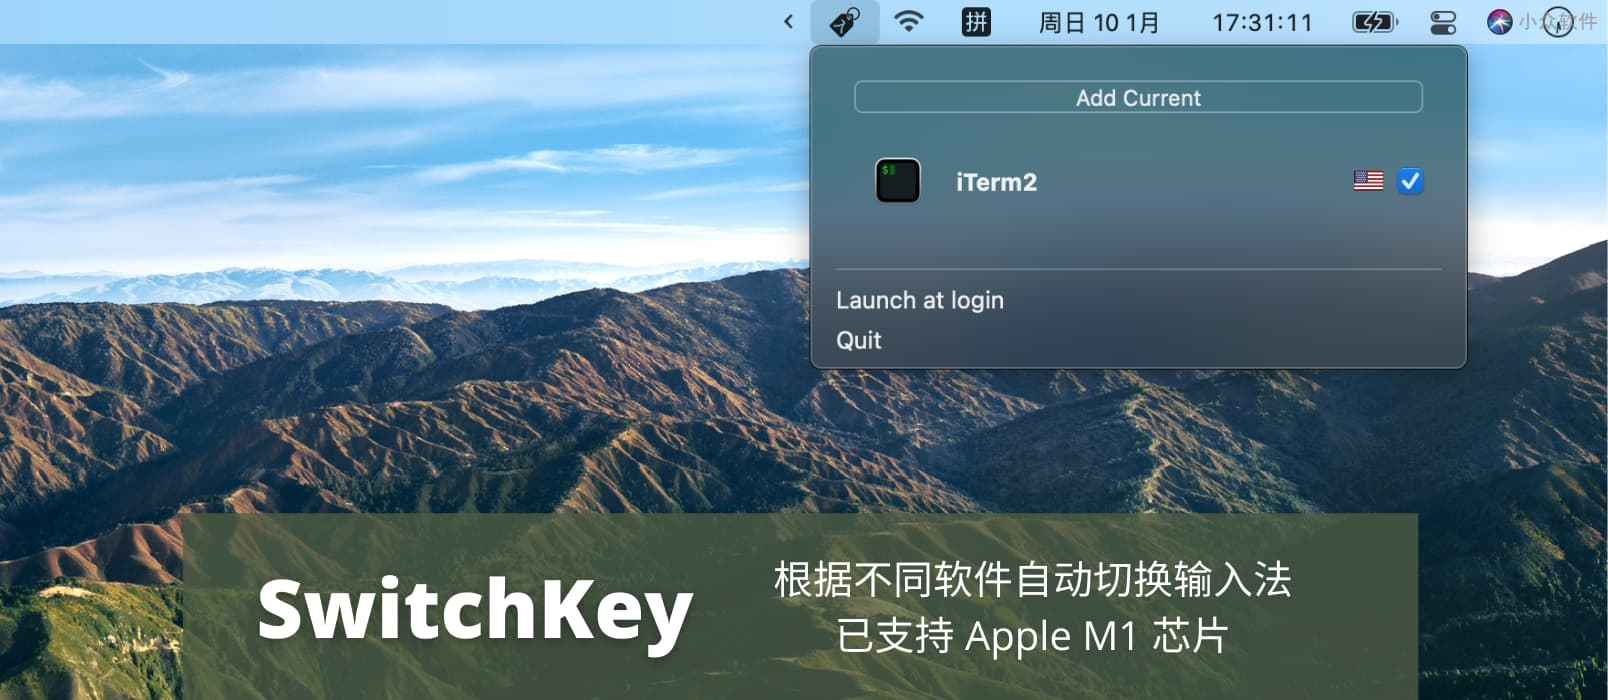 SwitchKey - 根据不同软件自动切换输入法，已支持 Apple M1 芯片[macOS]